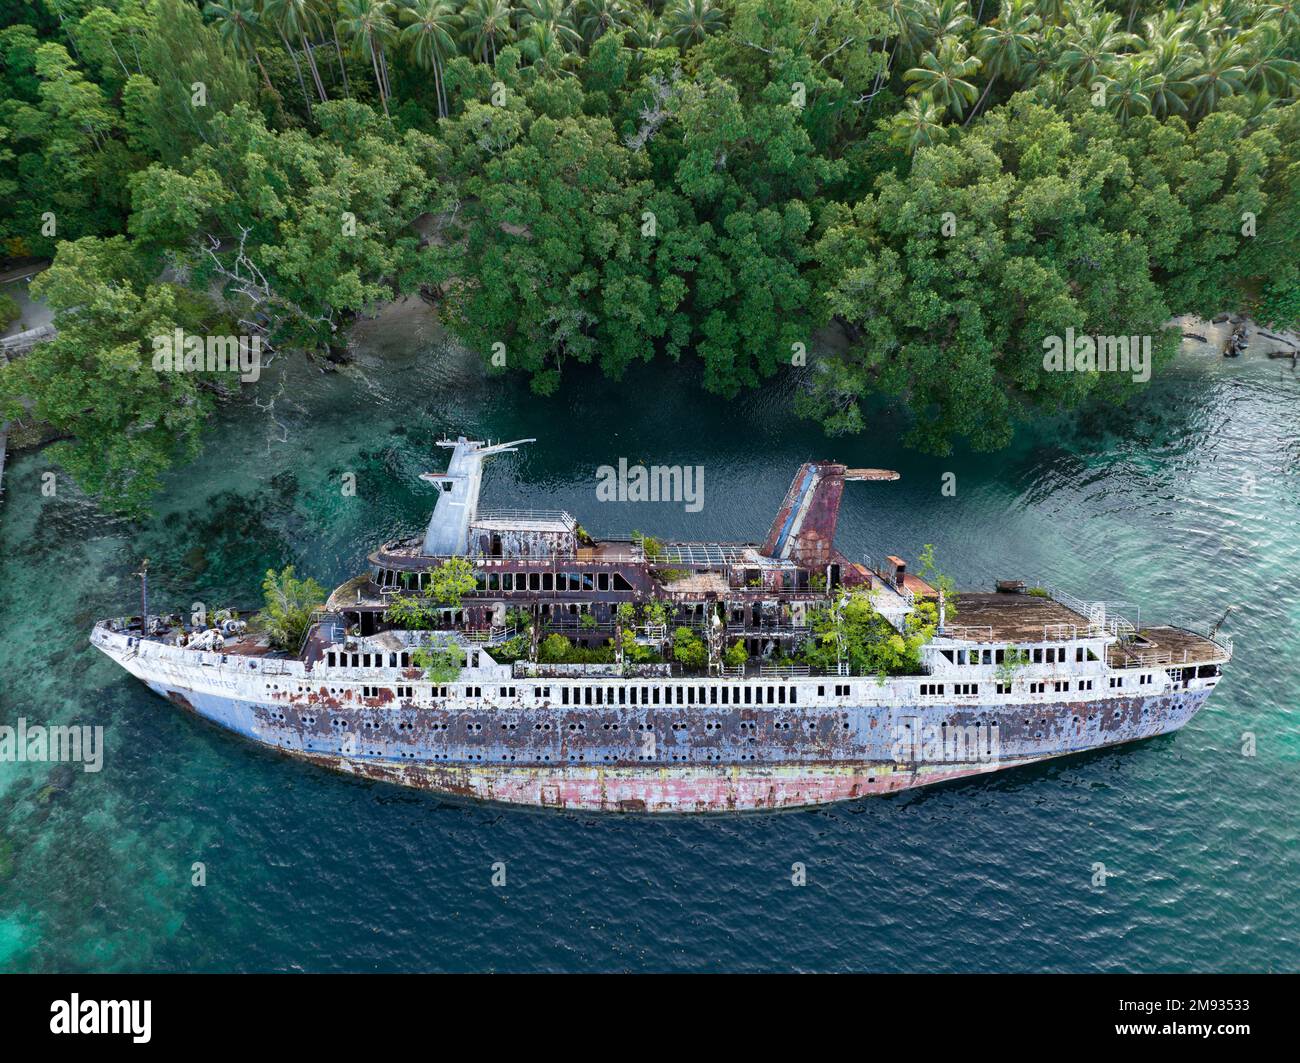 Mère nature s'est lentement reconquue le World Discoverer, un navire de croisière qui a été naufragé dans les îles Salomon. Le navire a heurté un récif en 2000. Banque D'Images